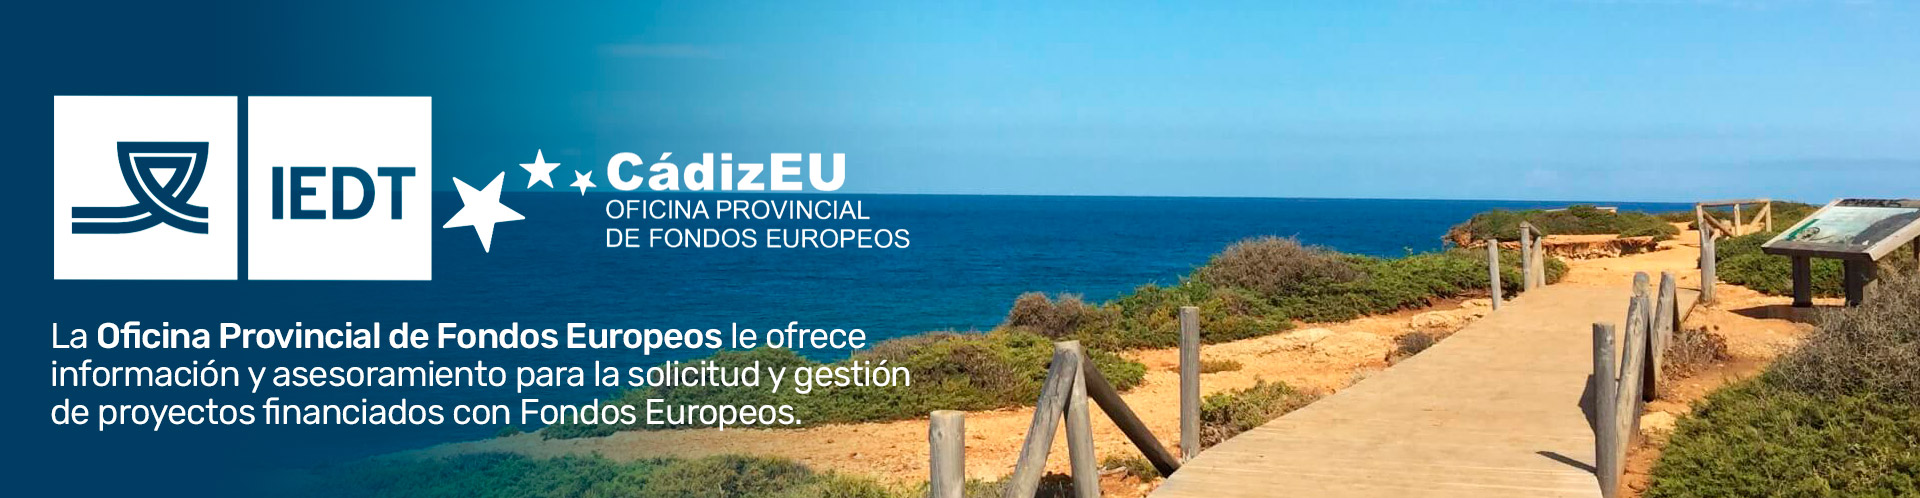 Oficina Provincial de Fondos Europeos CádizEU. Diputación de Cádiz